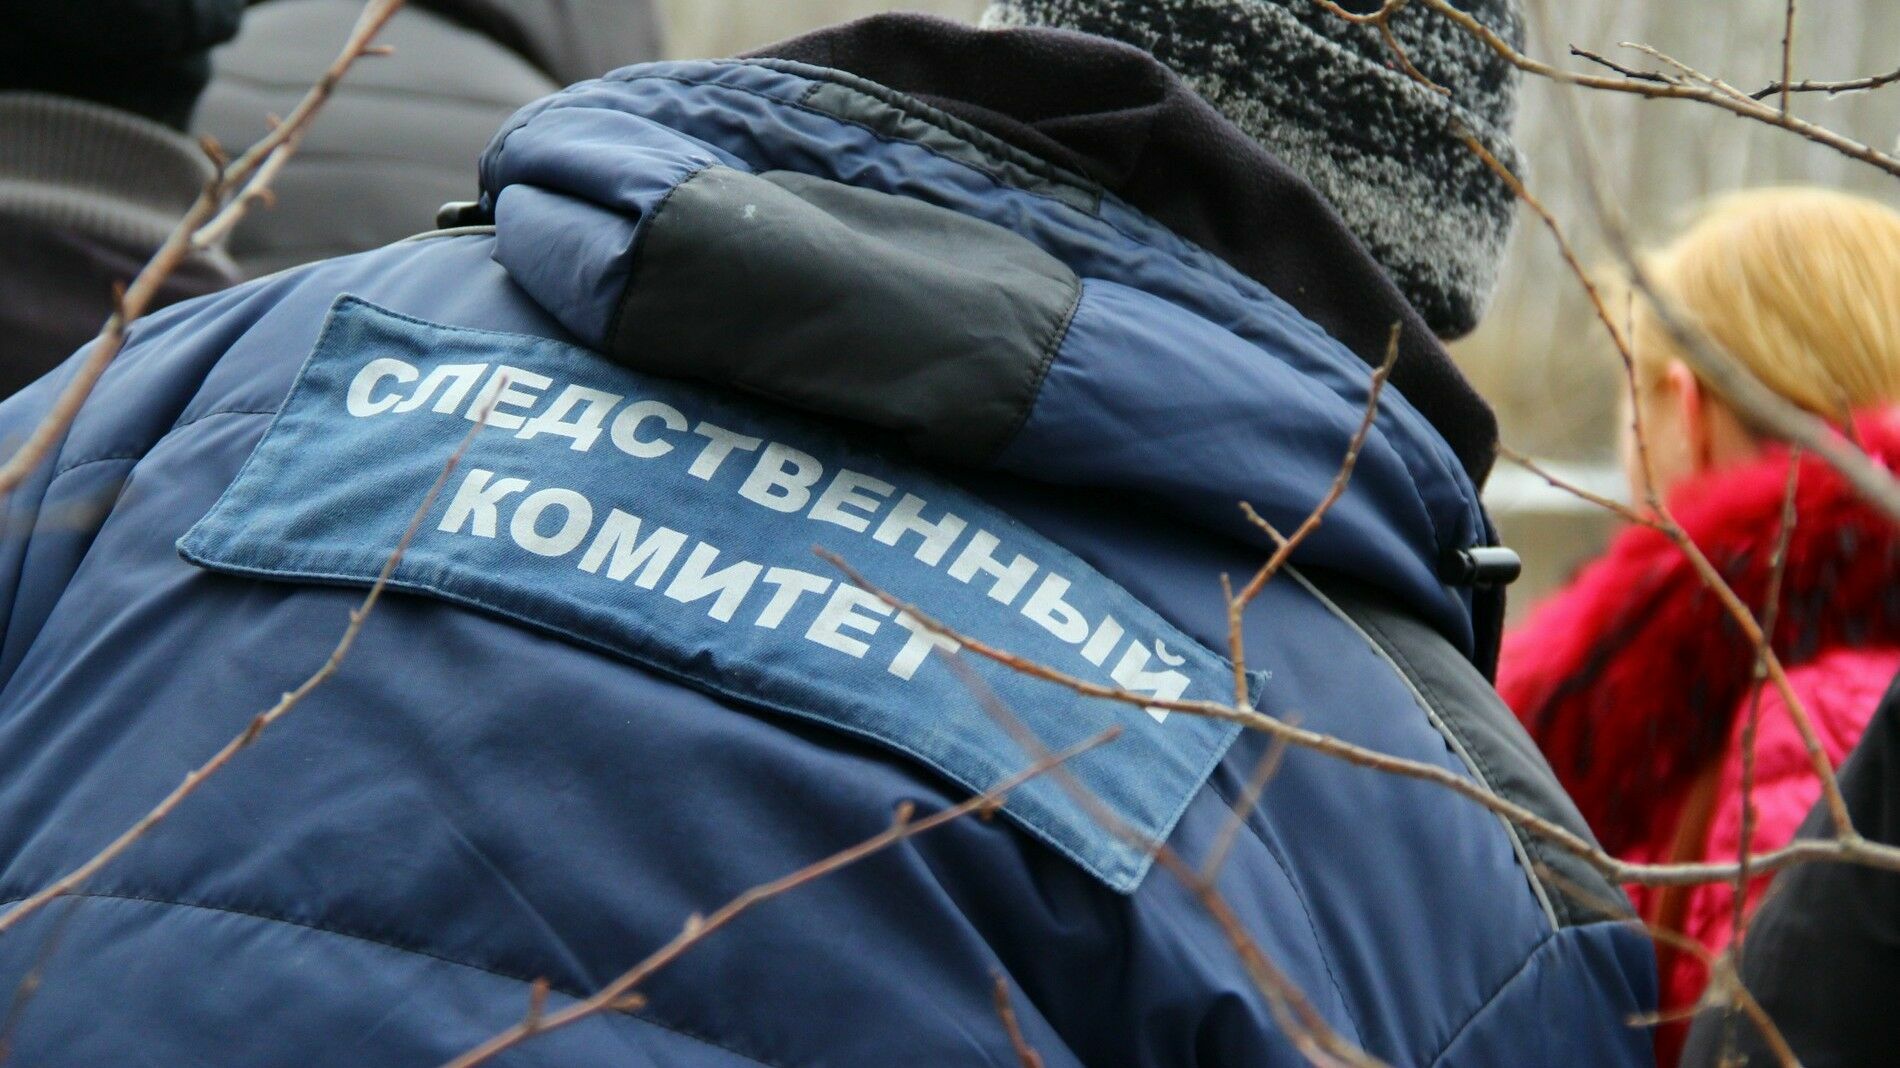 Двое жителей Костромской области до смерти замучили женщину из-за 2,5 тысяч рублей